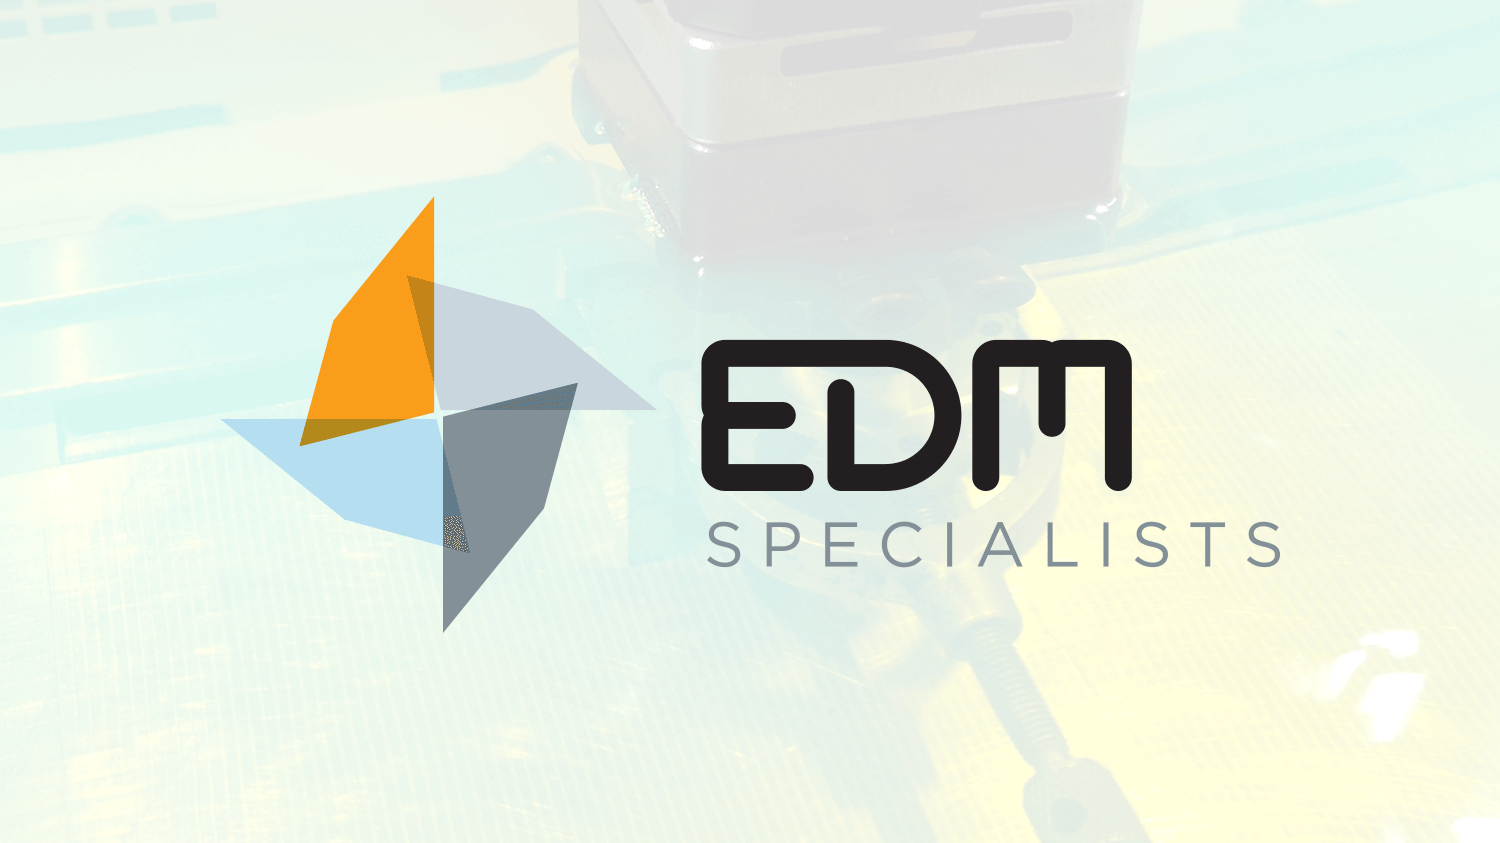 edm logo design